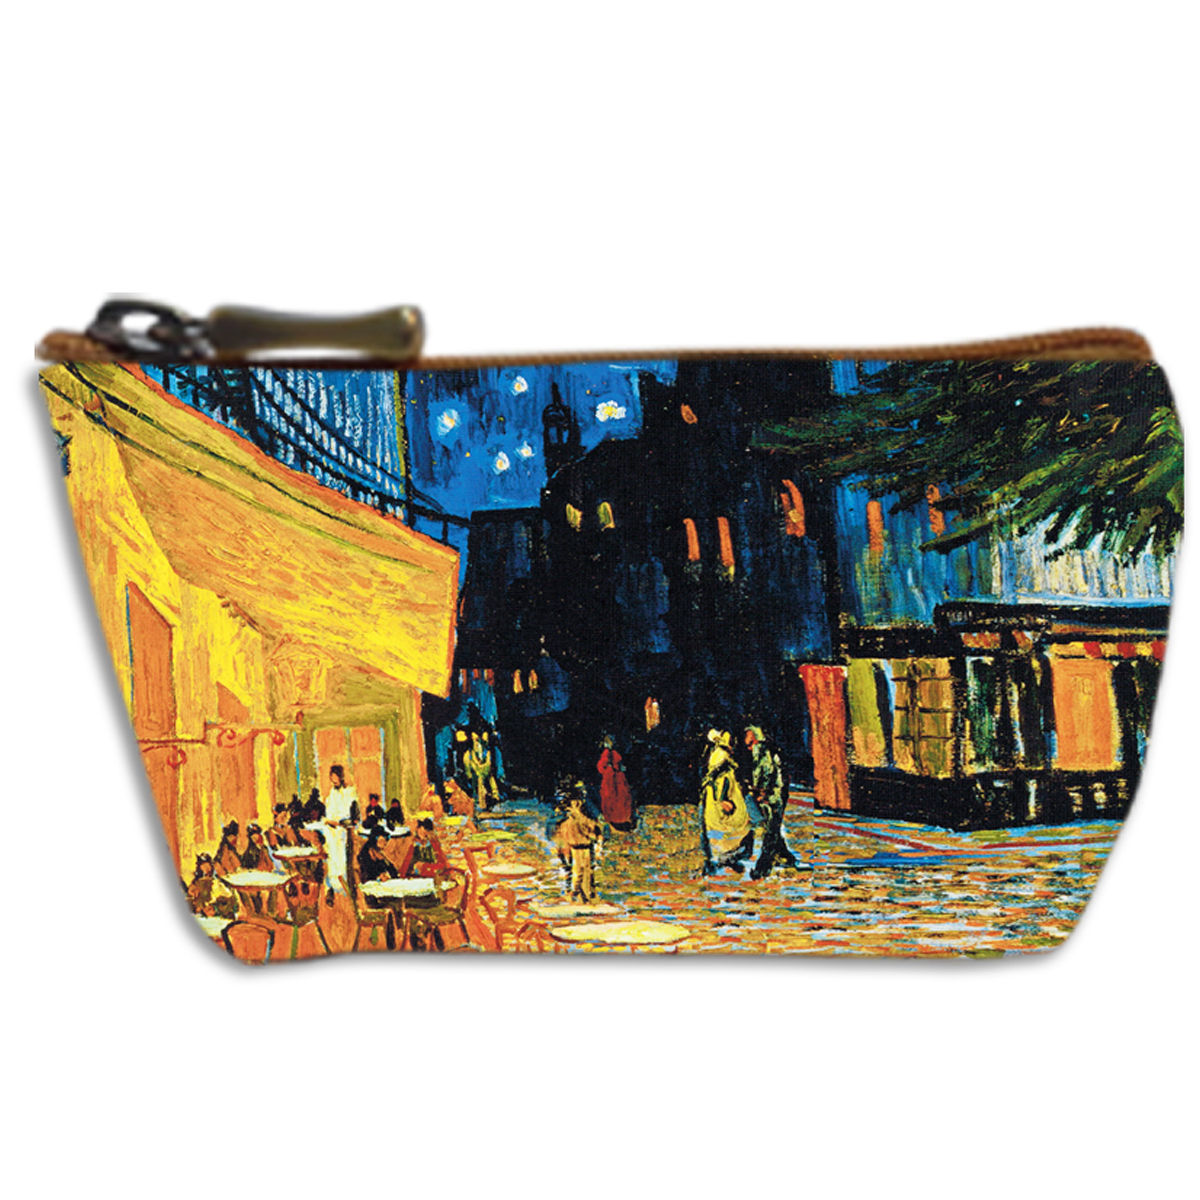 Porte-monnaie artisanal \'Vincent Van Gogh\' (Terrasse du café le soir)  - 13x8 cm - [Q6646]